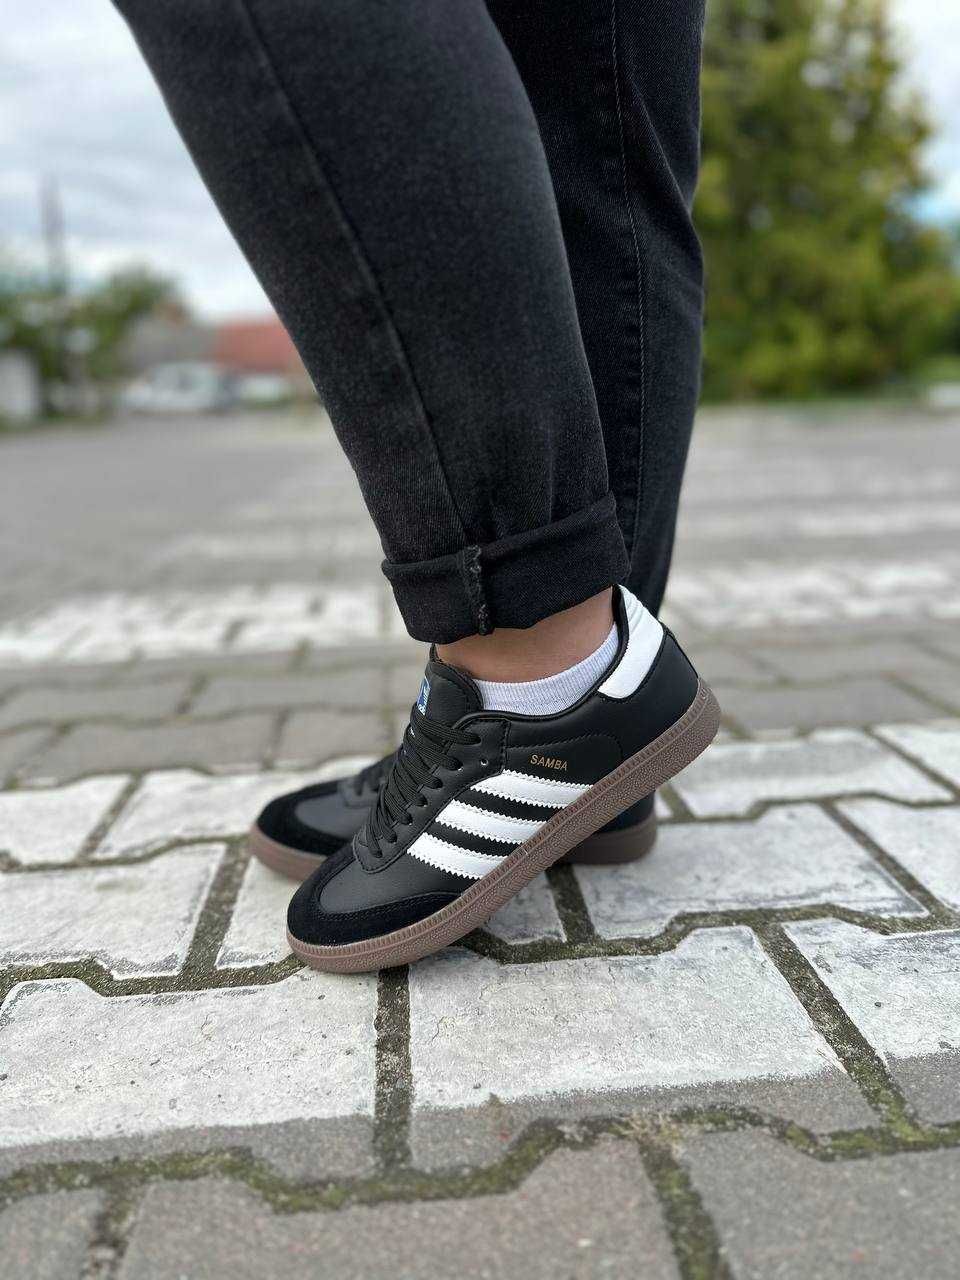 Женские кроссовки Adidas Samba OG Black White Gum 36-41 Хит Осени!